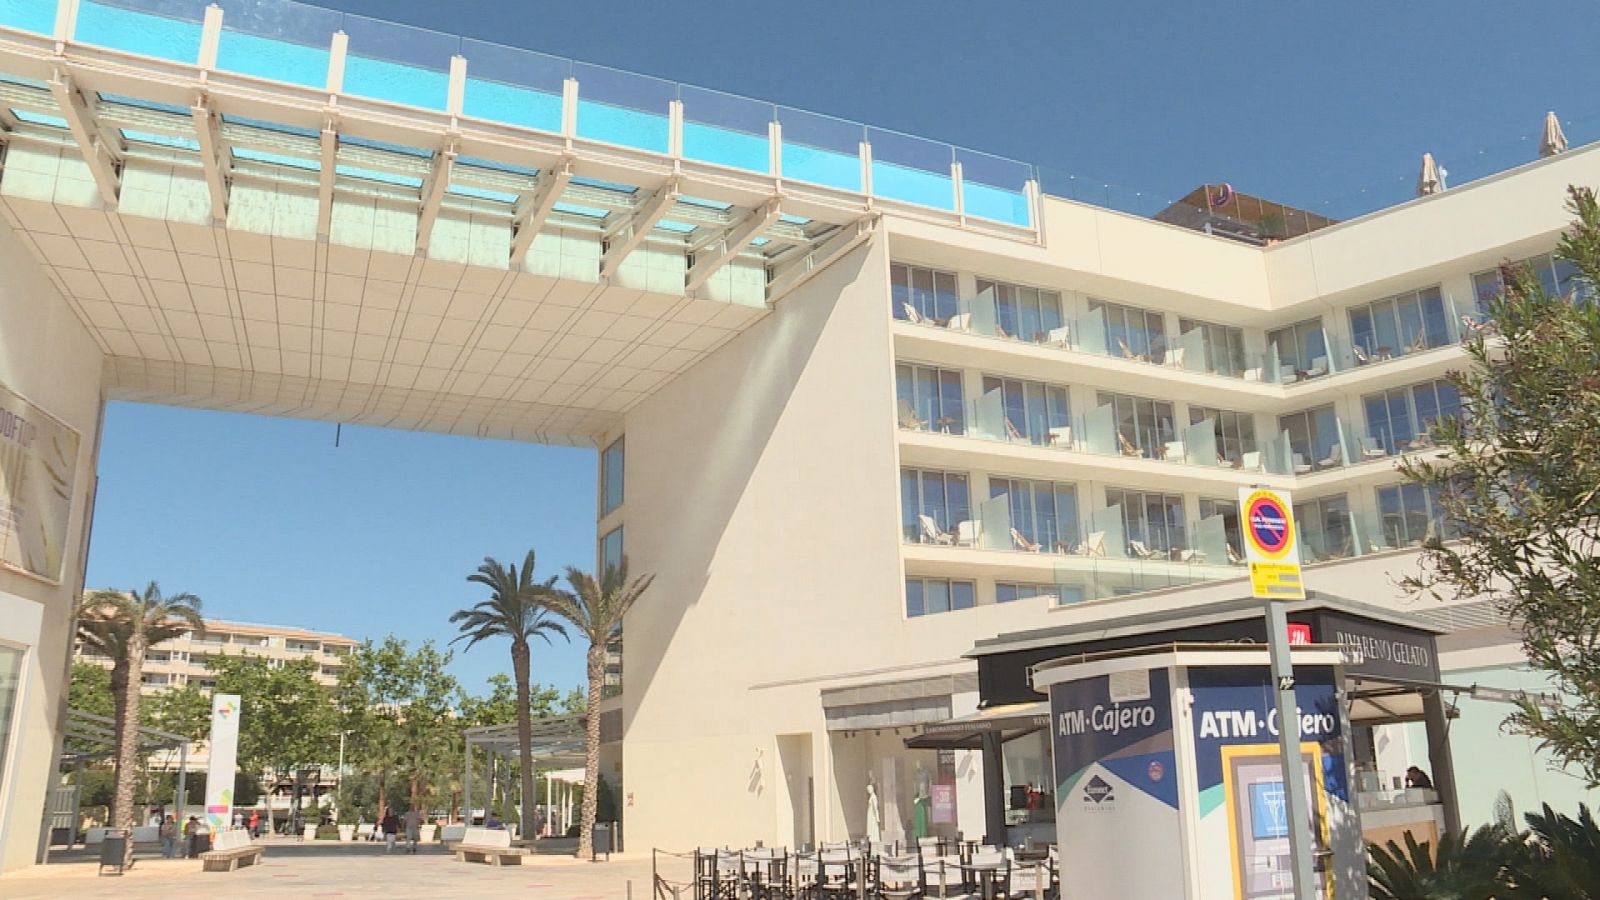 La plaza Momentum y su hotel con piscina flotante, iconos del nuevo Magaluf